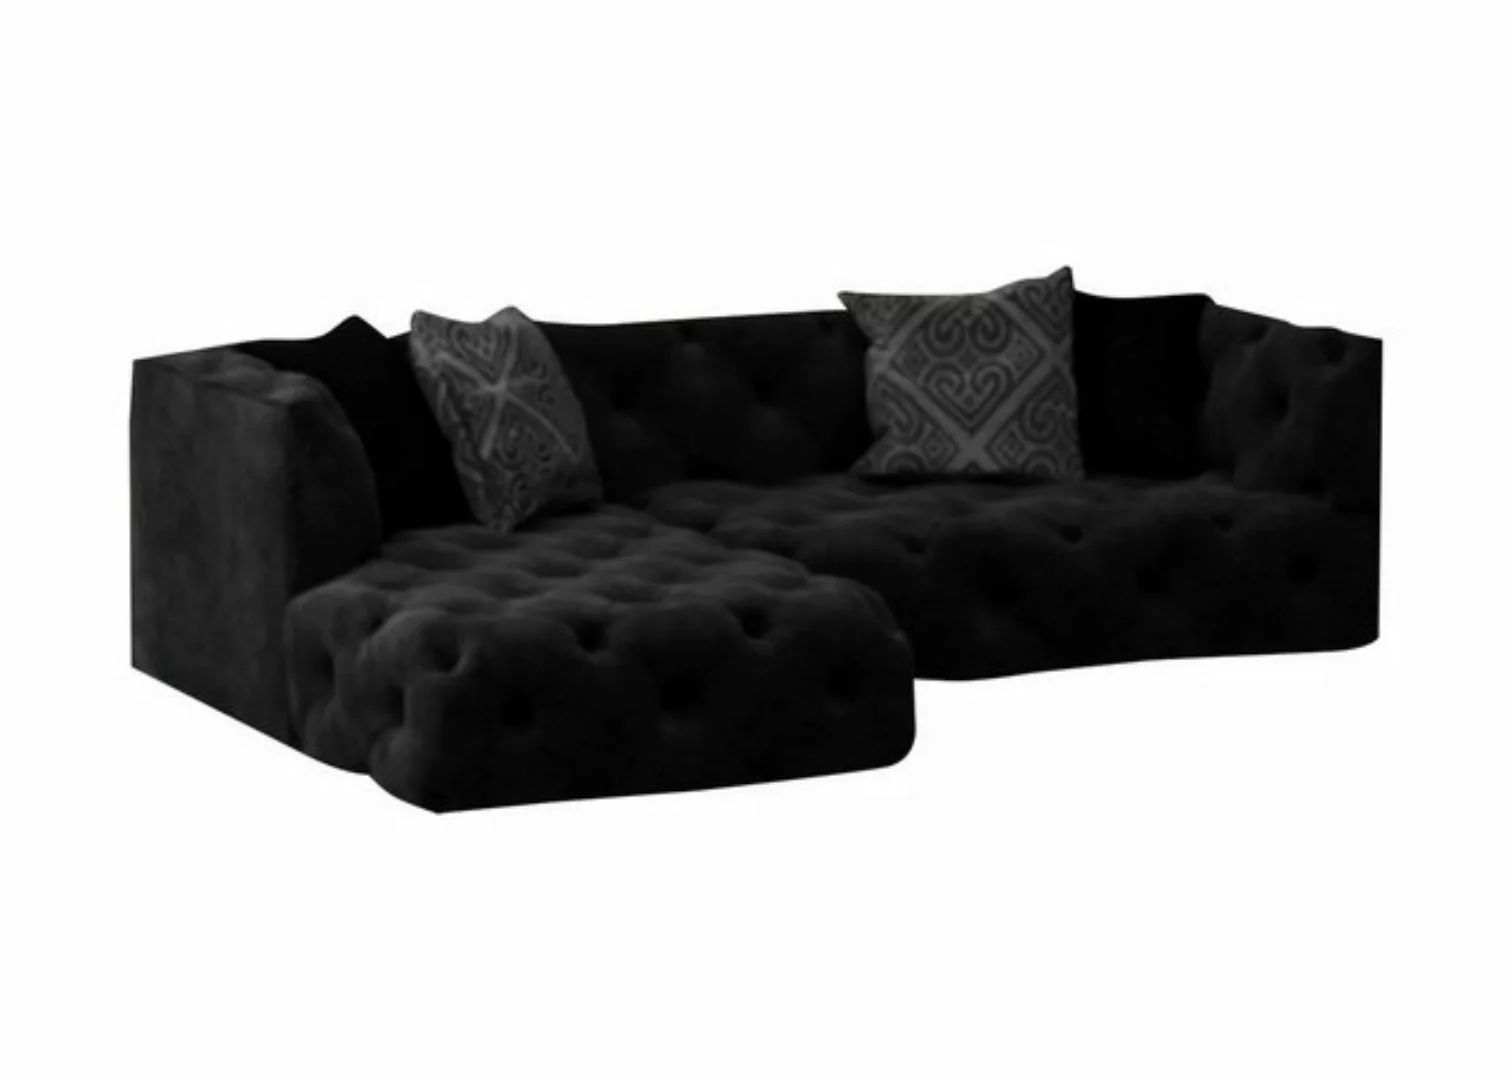 JVmoebel Ecksofa Braunes Chesterfield L-Form Couch Design Polstermöbel Neu, günstig online kaufen